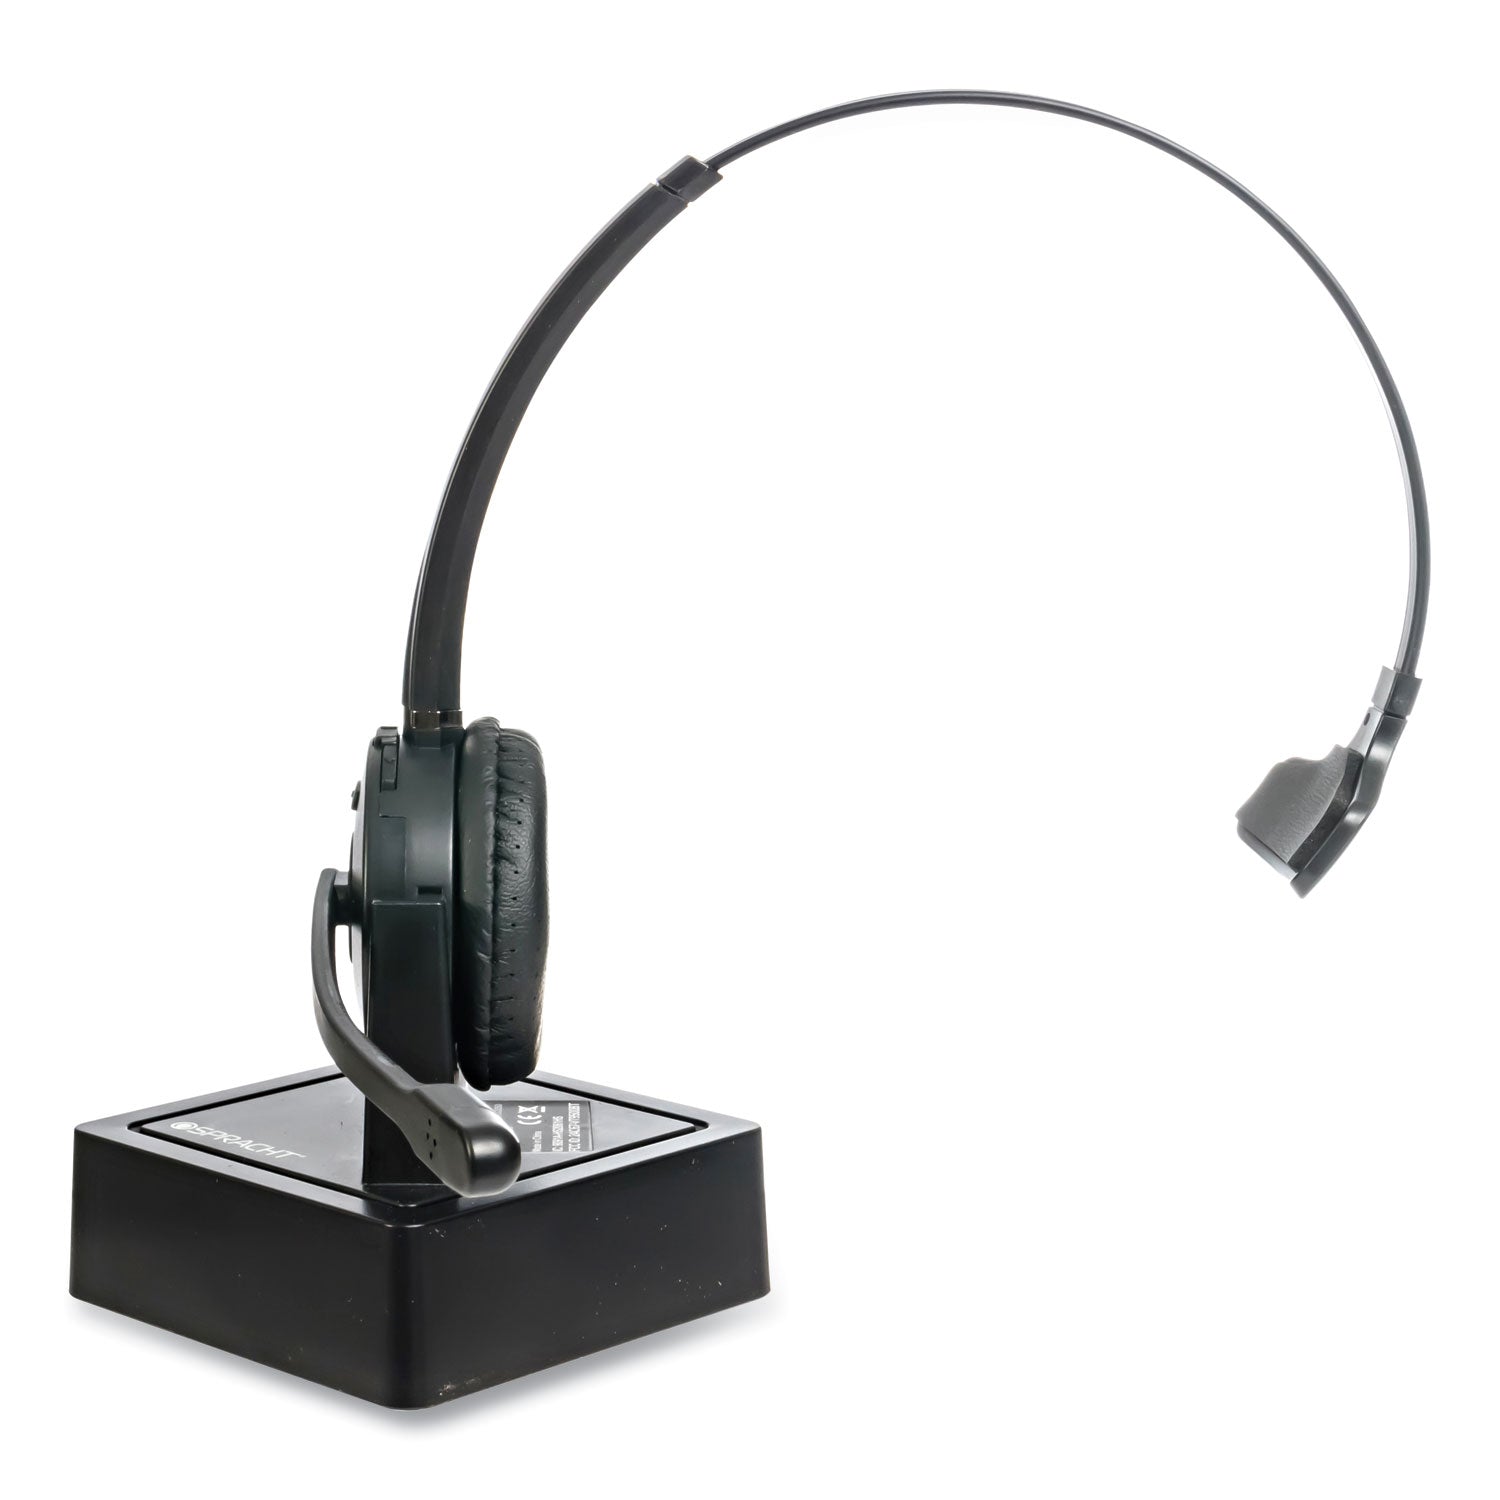 zum-maestro-bluetooth-monaural-over-the-head-headset-black_spths2050 - 5